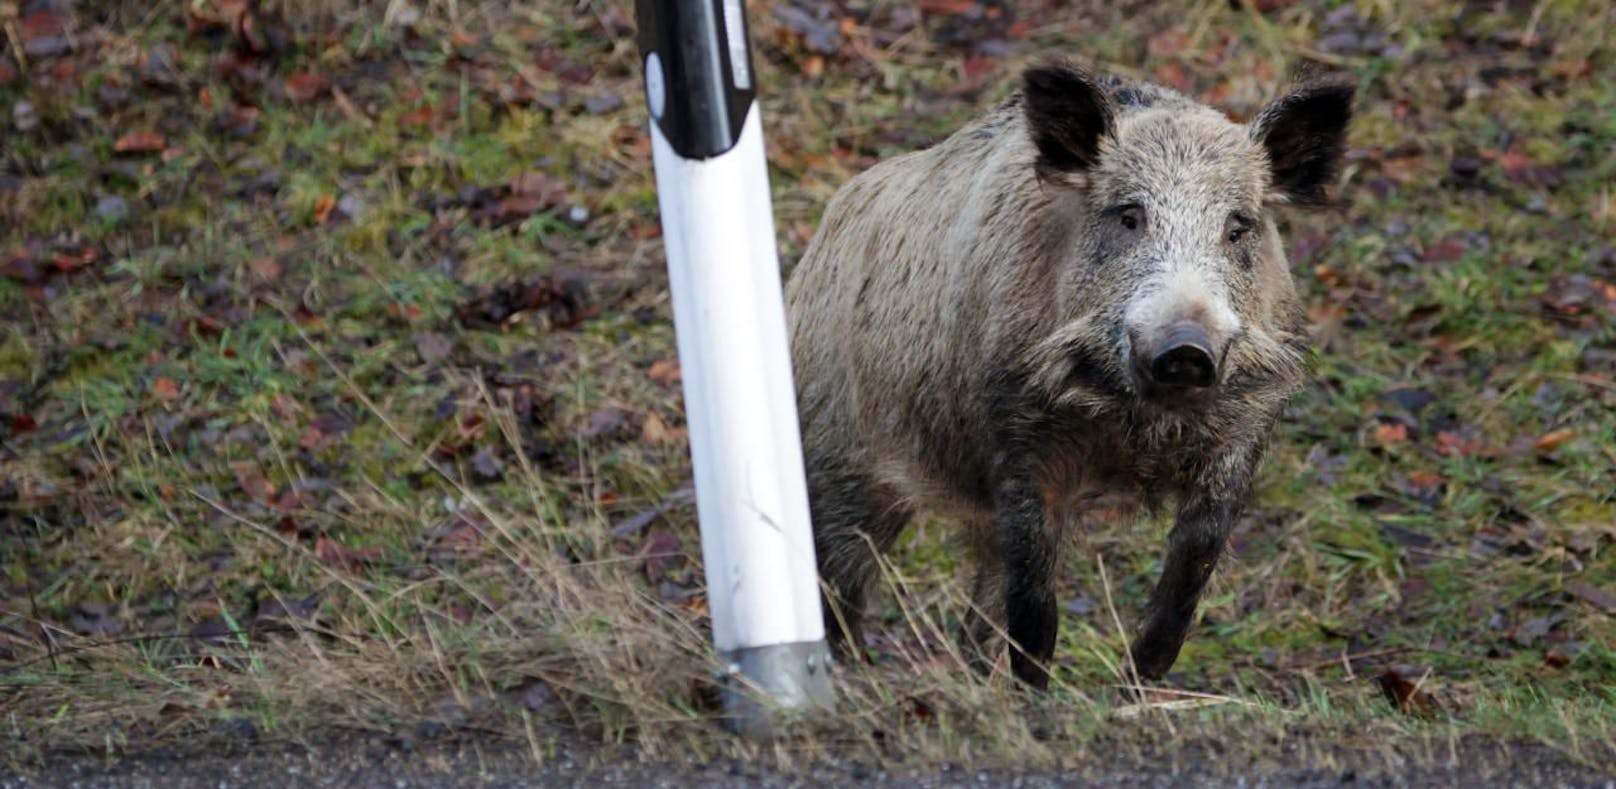 Swarovski-Kristalle sollen Wildschweine verjagen